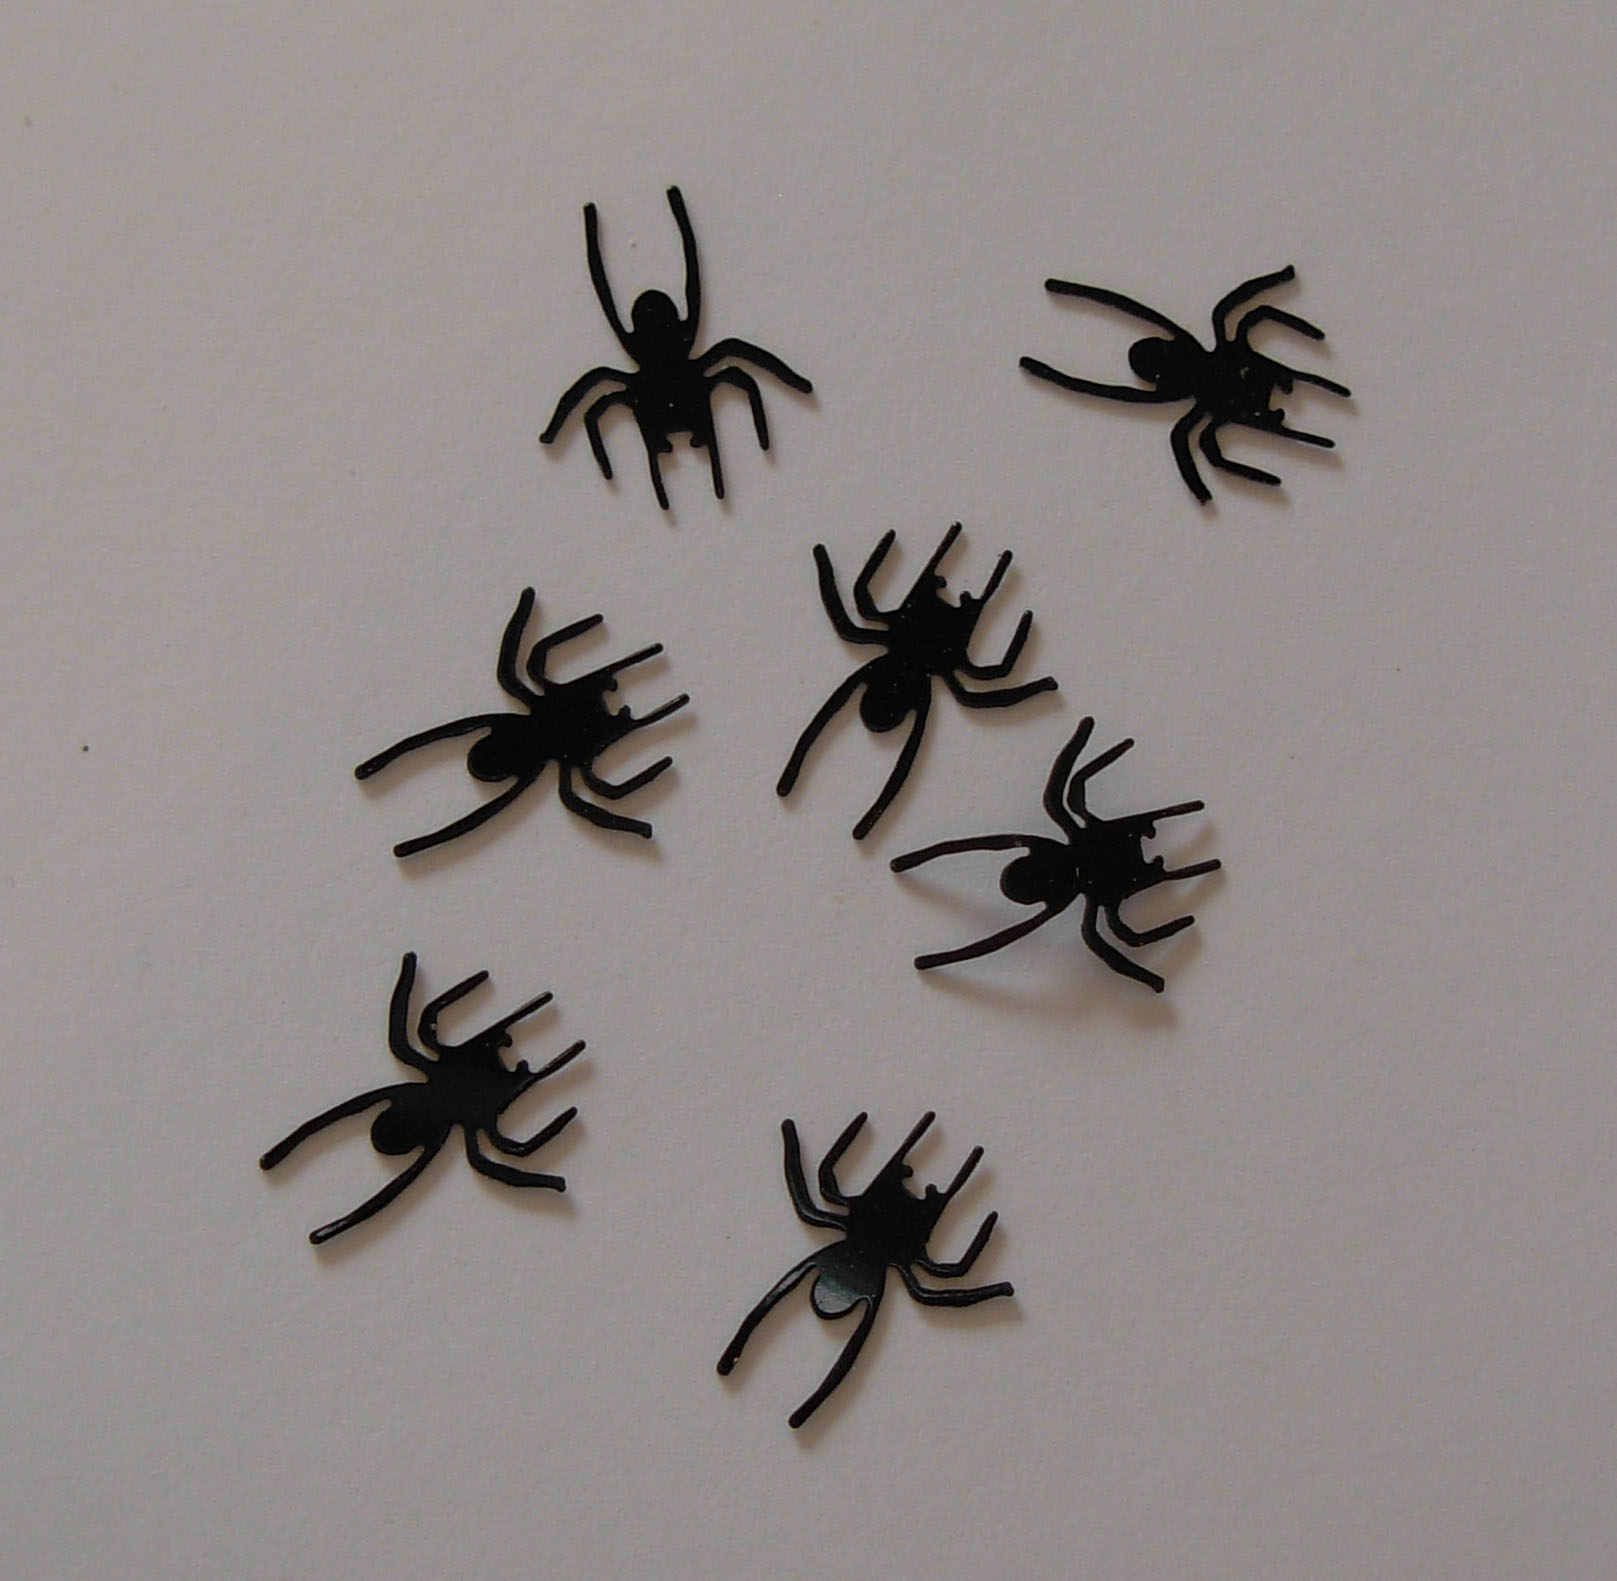 1116: Black Spiders Micro Confetti